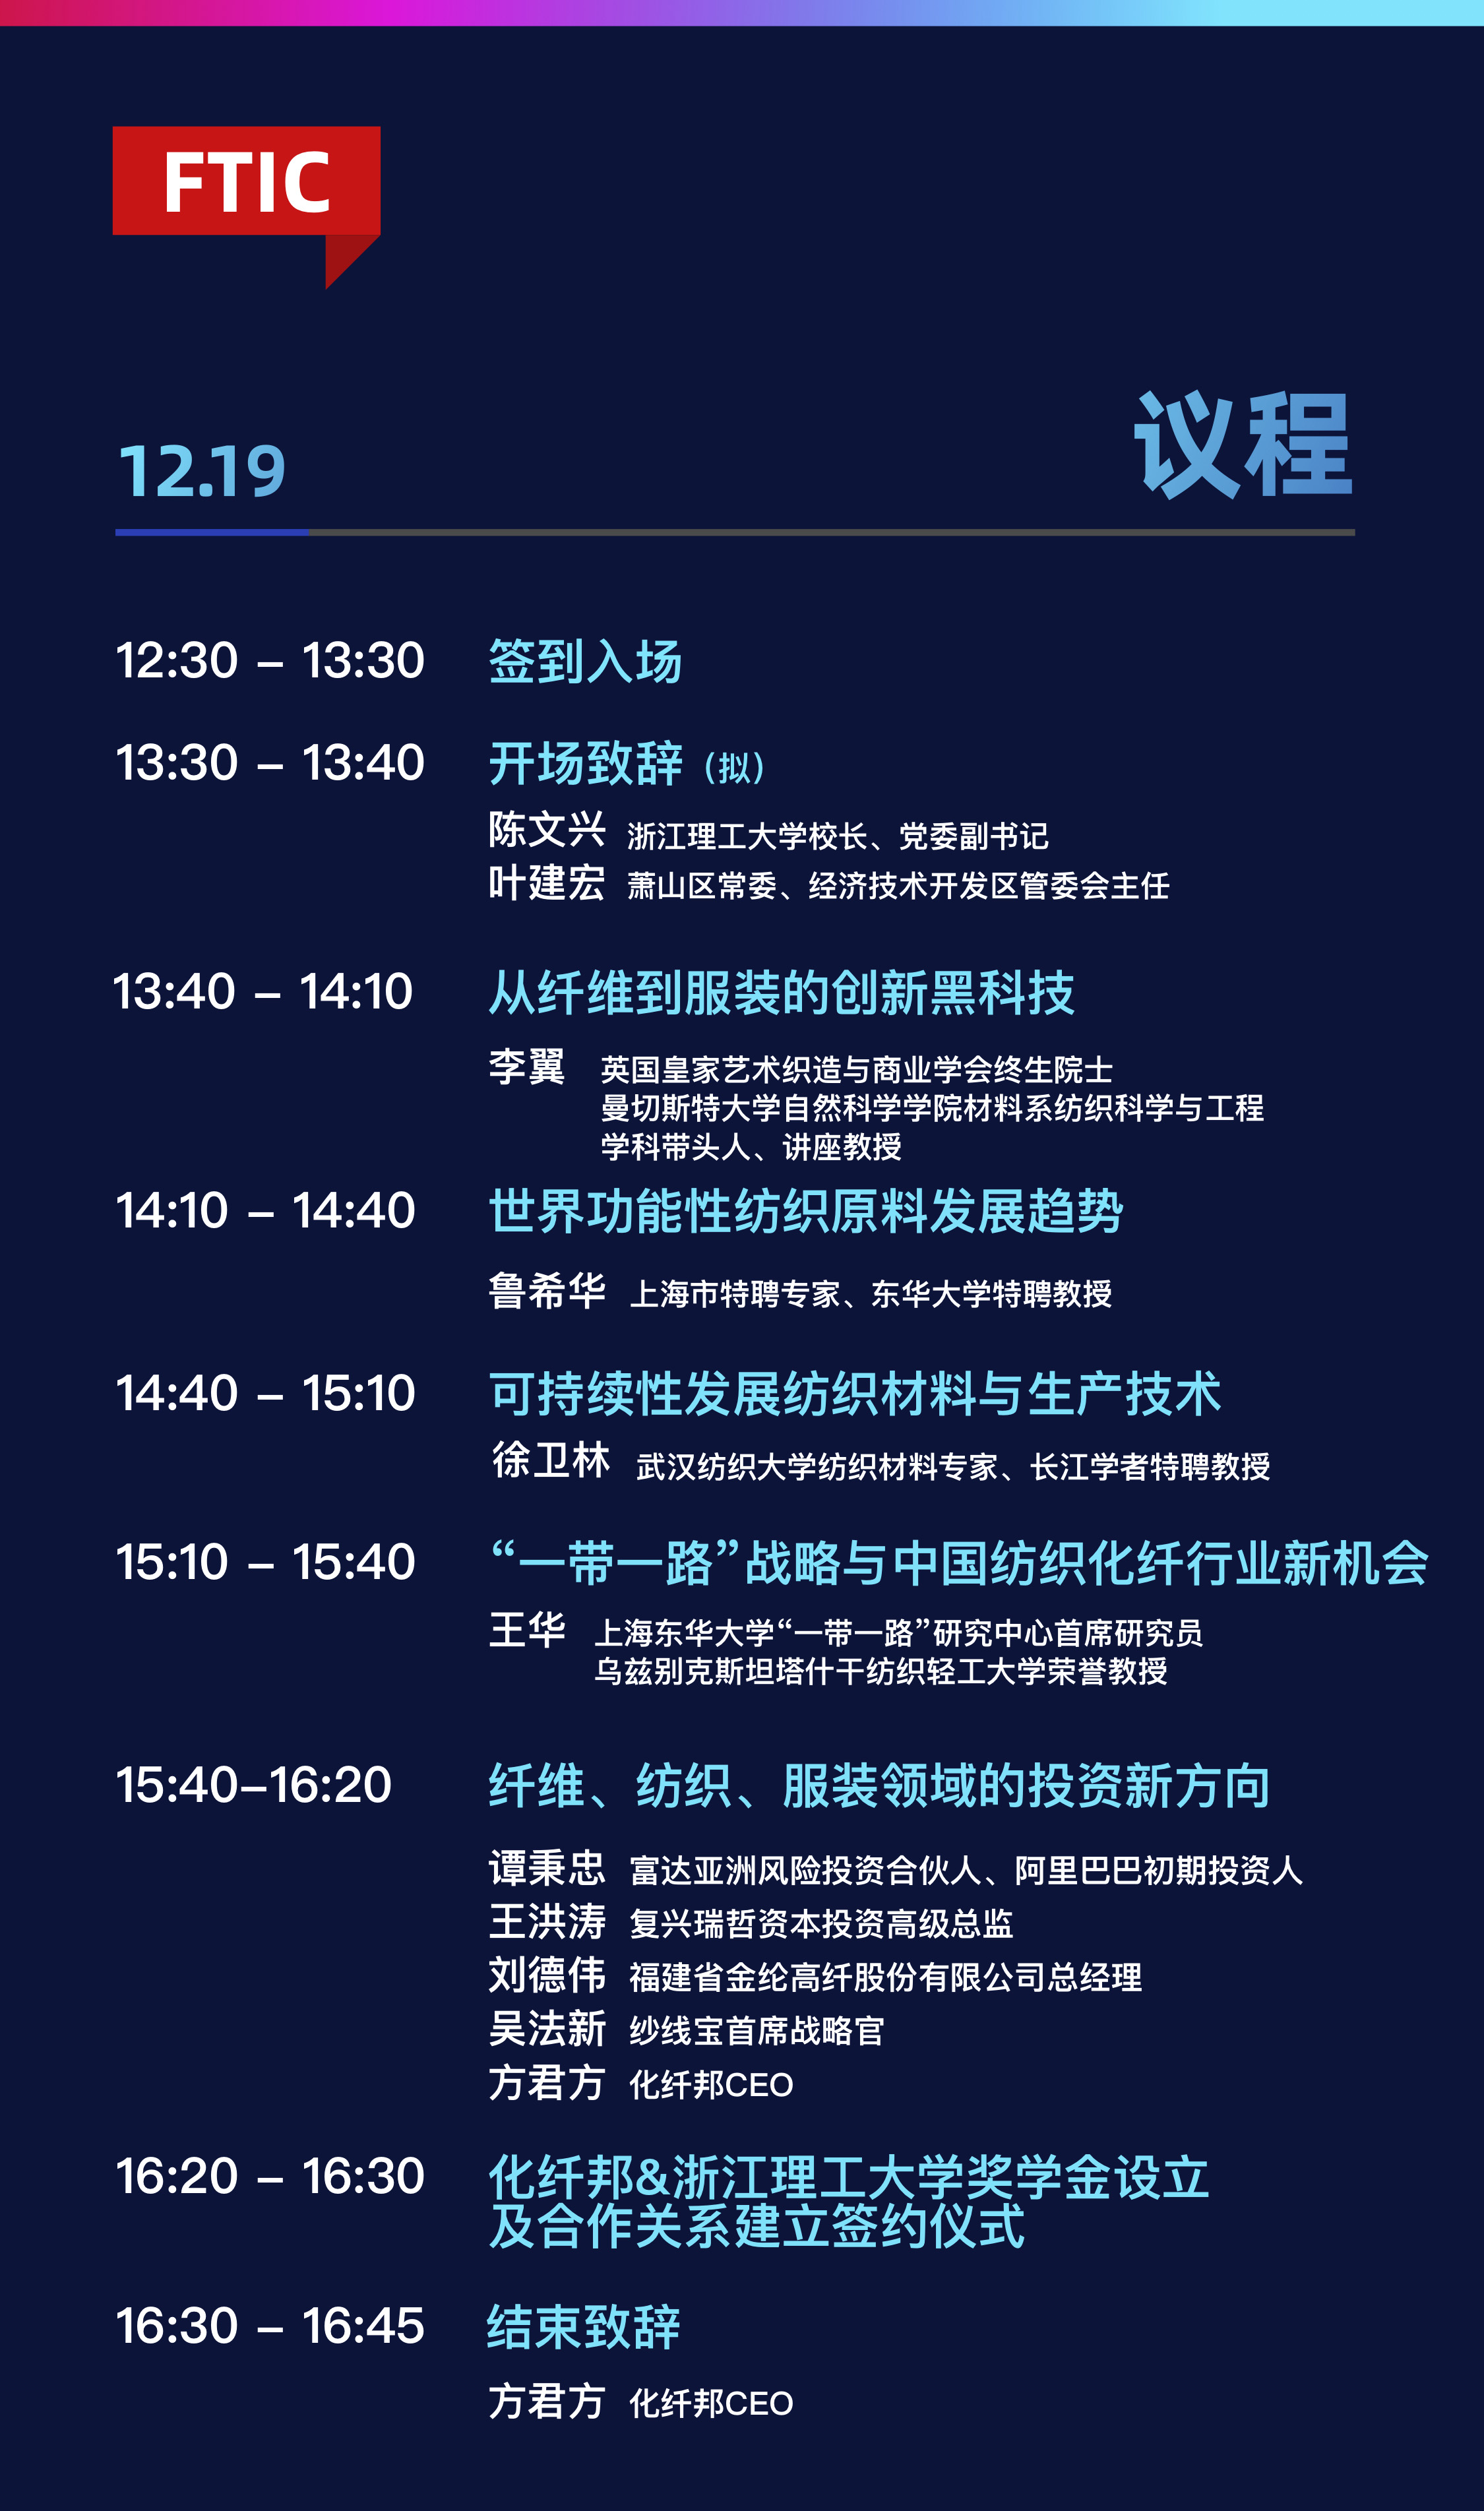 2019中国新纤大会——全球纤维科技创新开发者论坛（杭州）